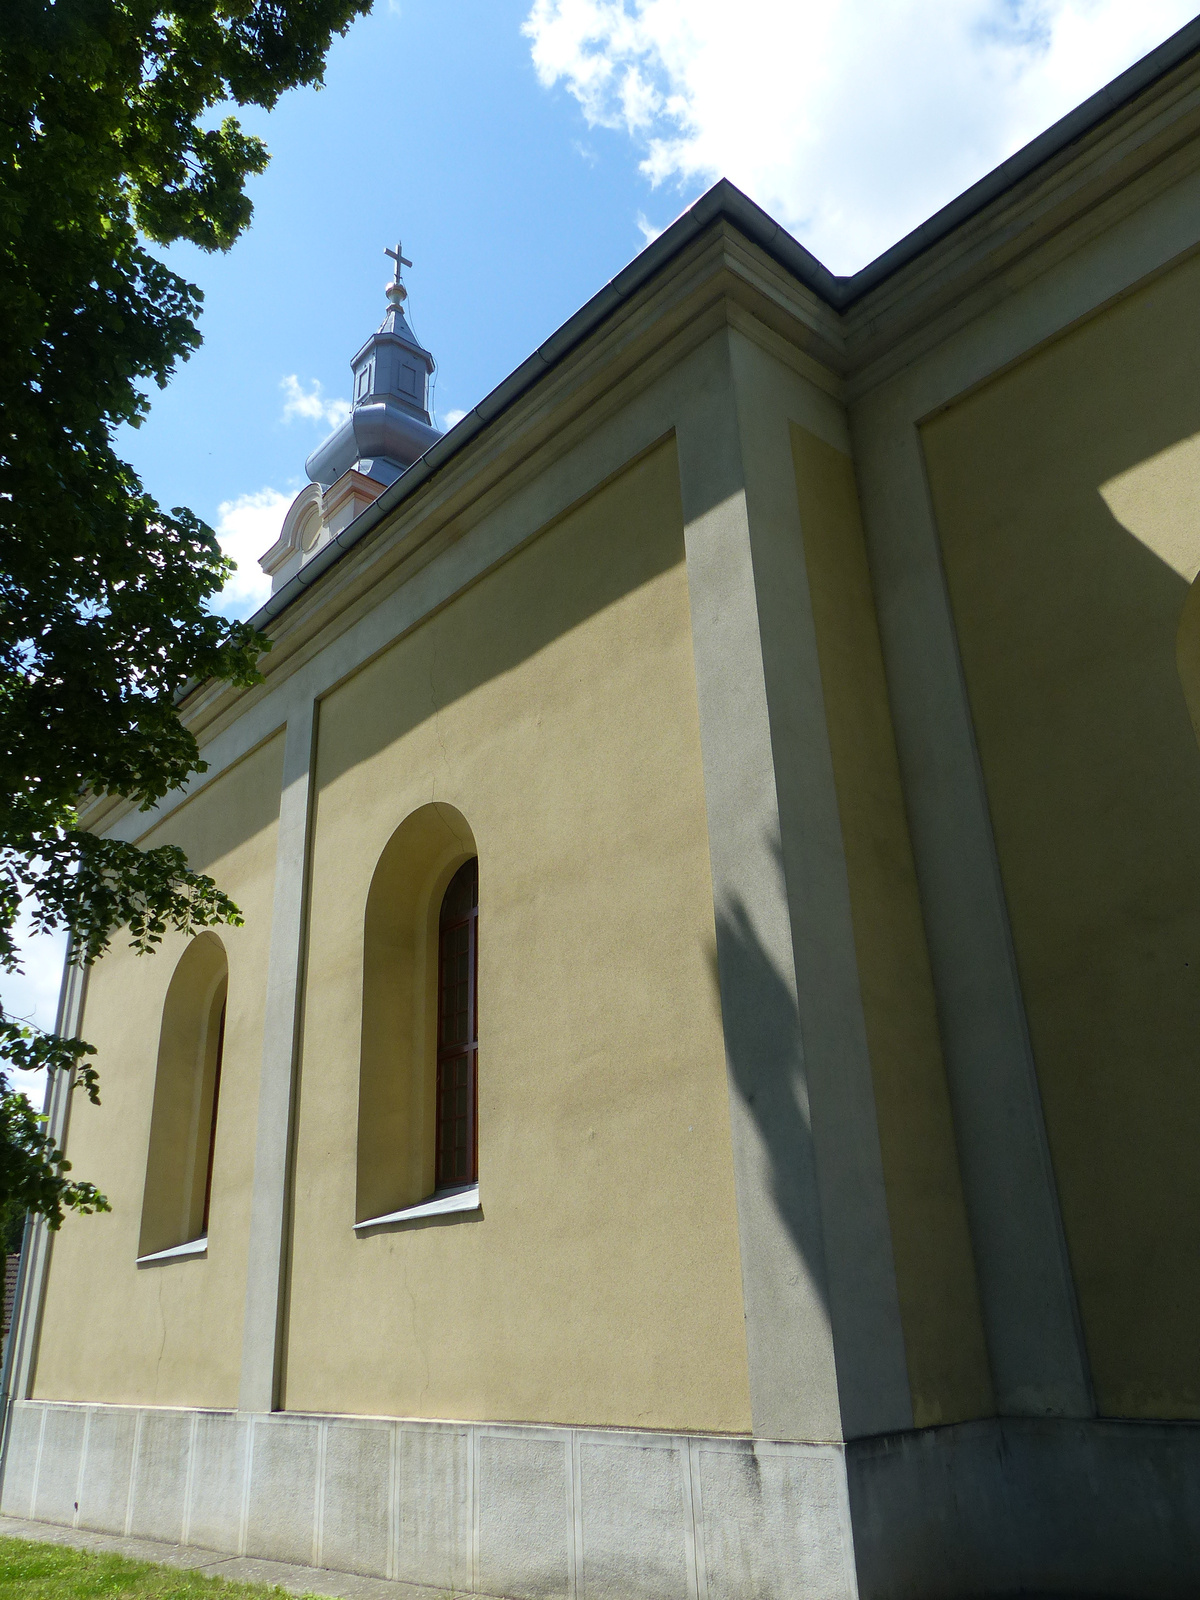 Szendehely, Kisboldogasszony templom, SzG3